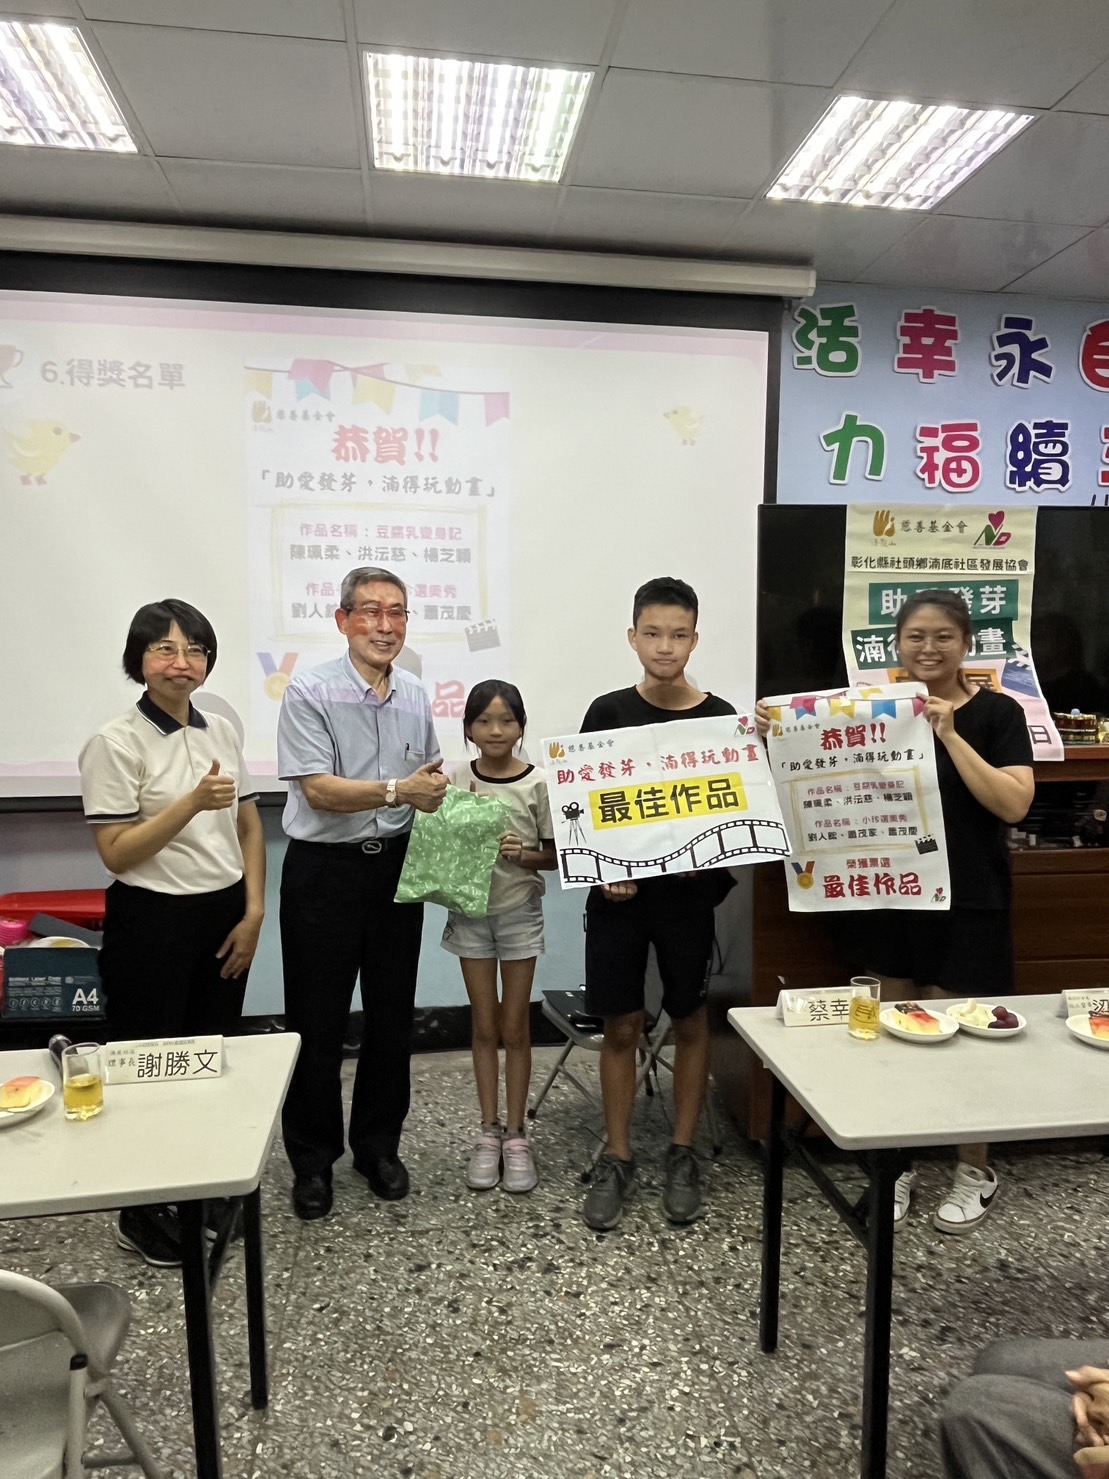 法鼓山慈基會董事陳治明代表致贈獎品給參與創作最佳作品的學童。